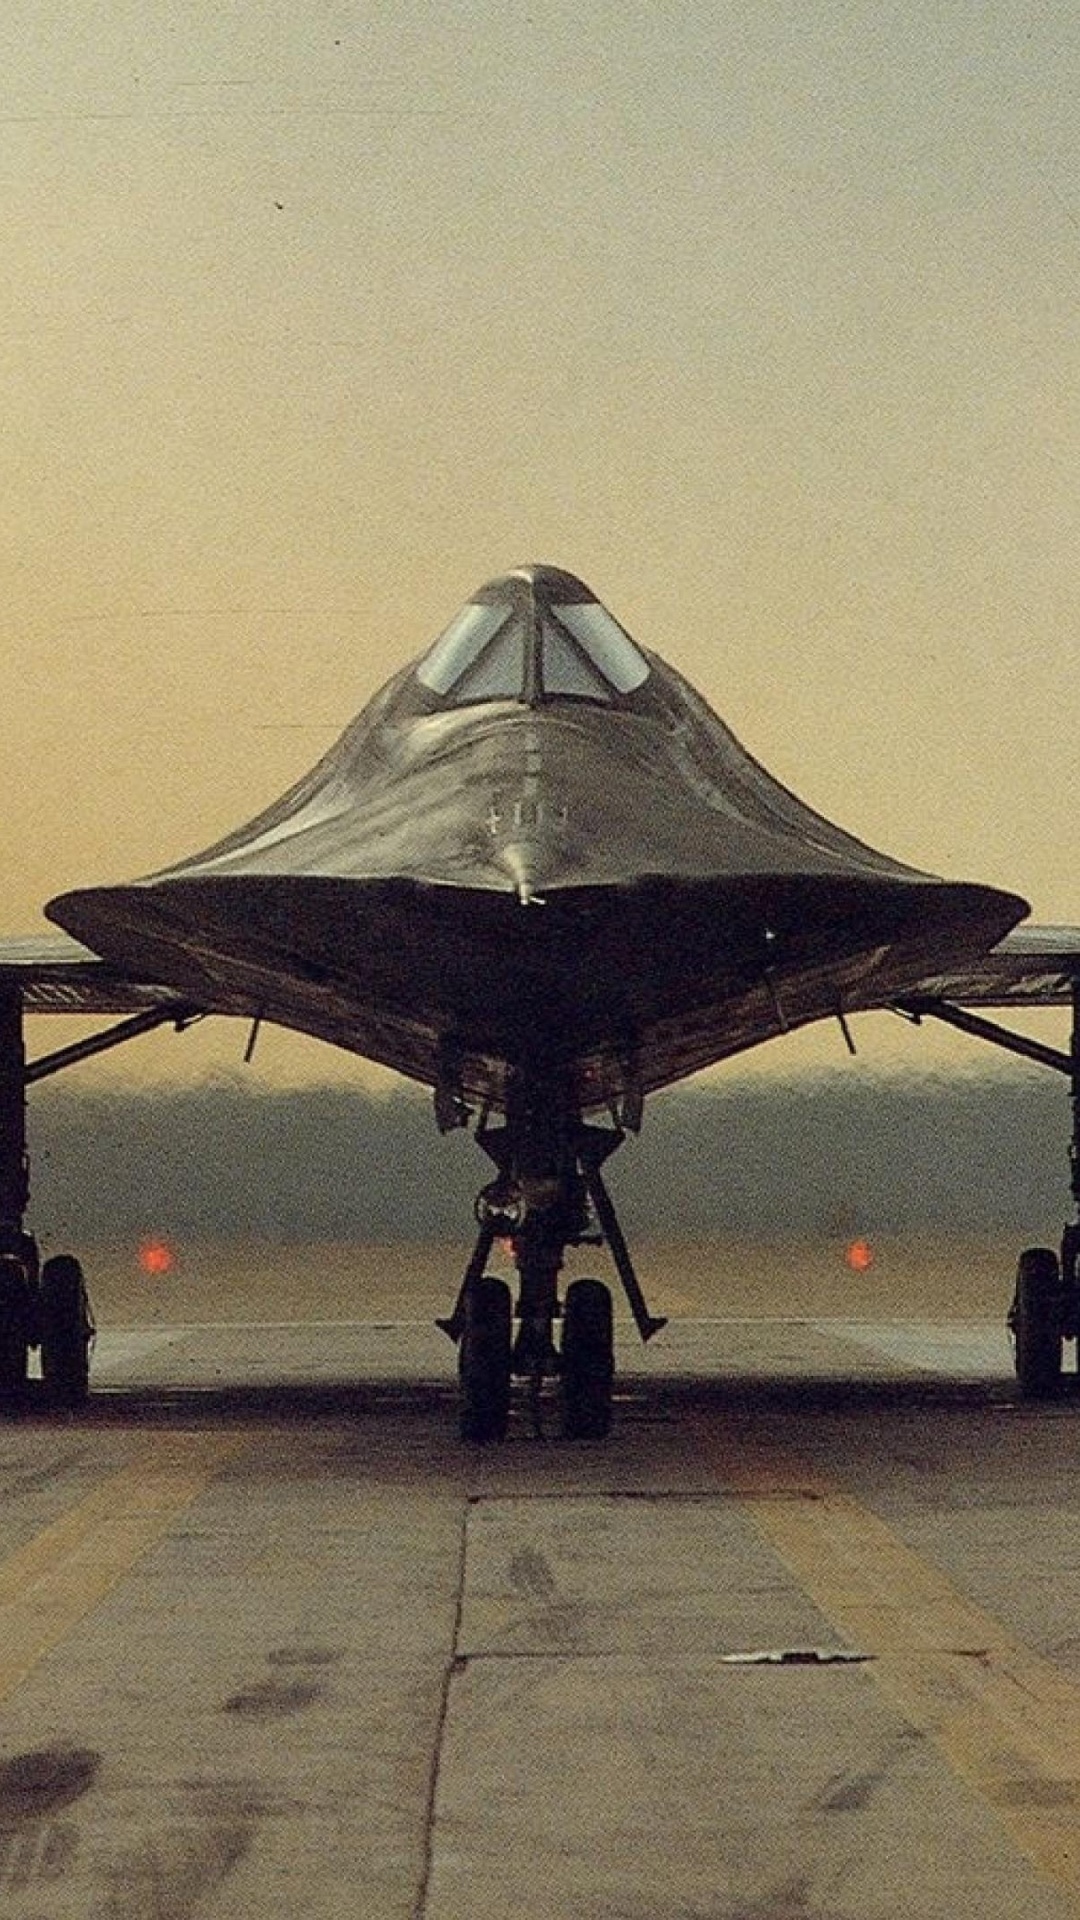 洛克希德SR-71黑鸟, 喷气式飞机, 洛克希德*马丁公司, 军用飞机, 航空 壁纸 1080x1920 允许